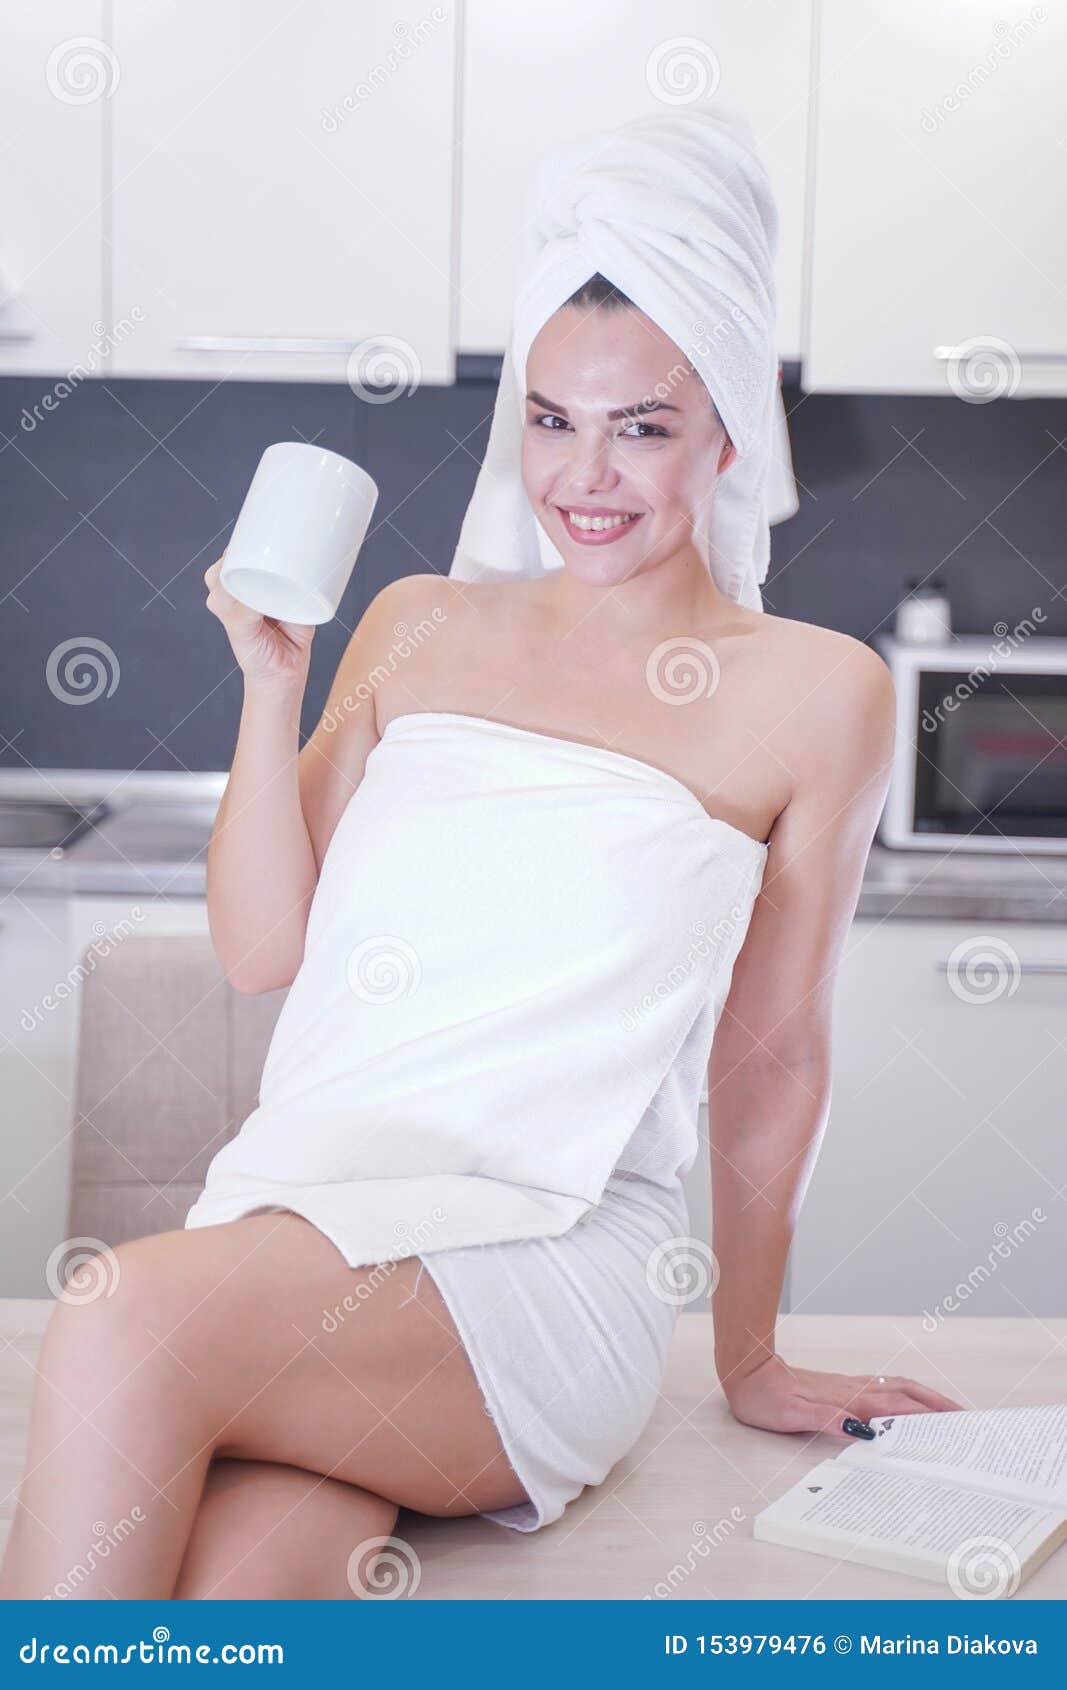 Девочка в полотенце. Девушка в полотенце на кухне. Молодые девушки в полотенце. Девушка закутанная в полотенце. Девушка в коротком полотенце.